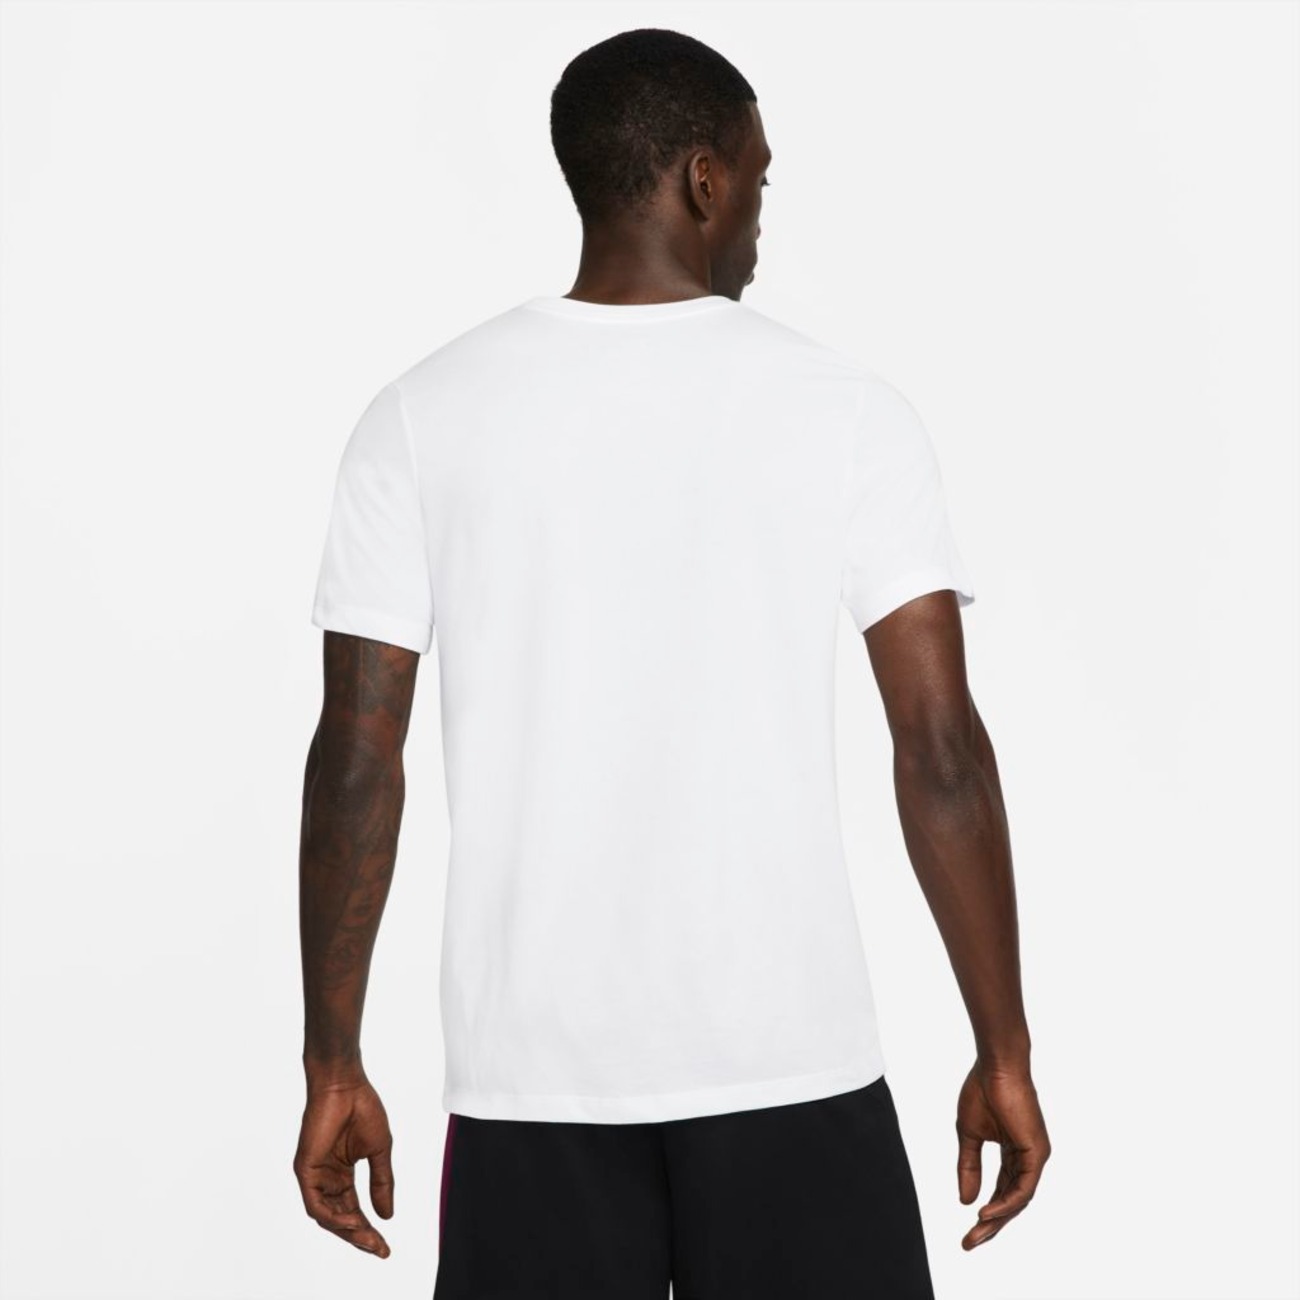 Camiseta Nike Dri-FIT "Blood, Sweat, Basketball" Masculina - Foto 2